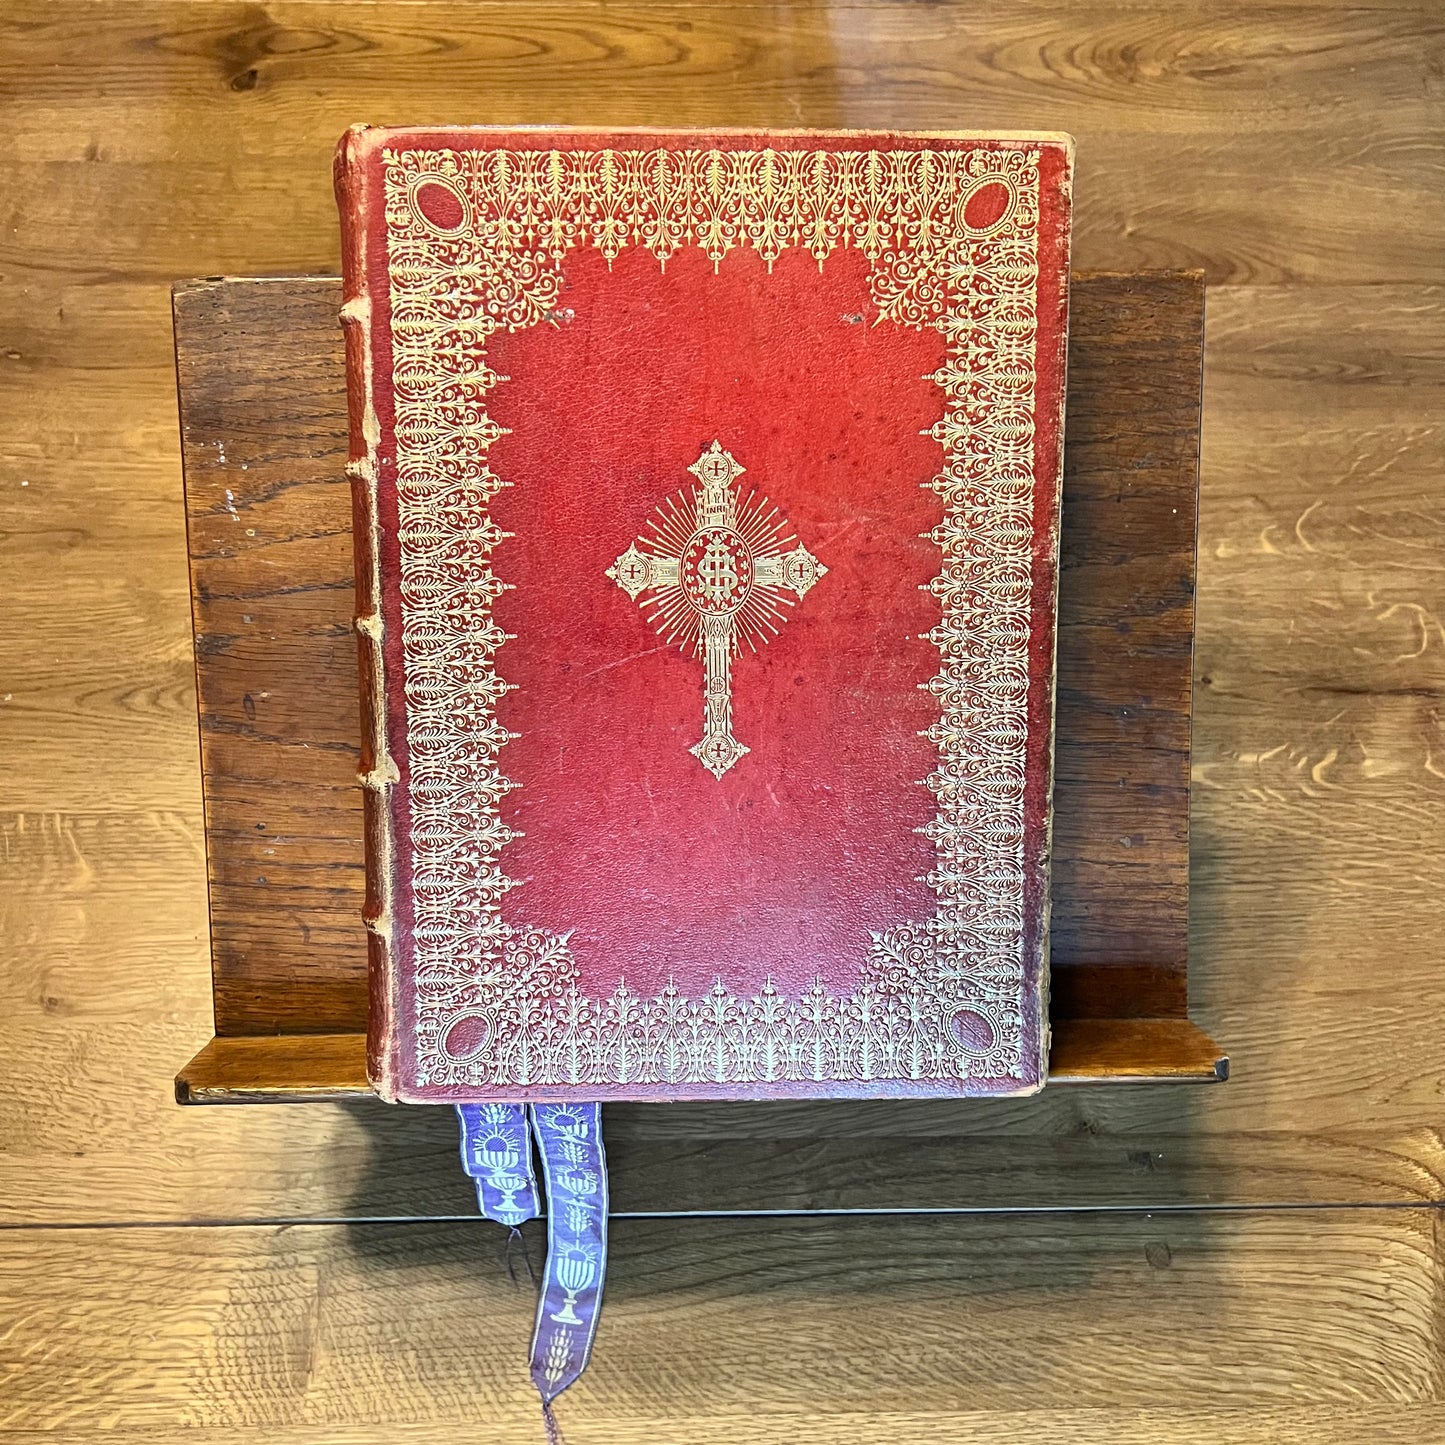 Antieke Missale Romana (1920) inclusief leesstandaard The Collectionist